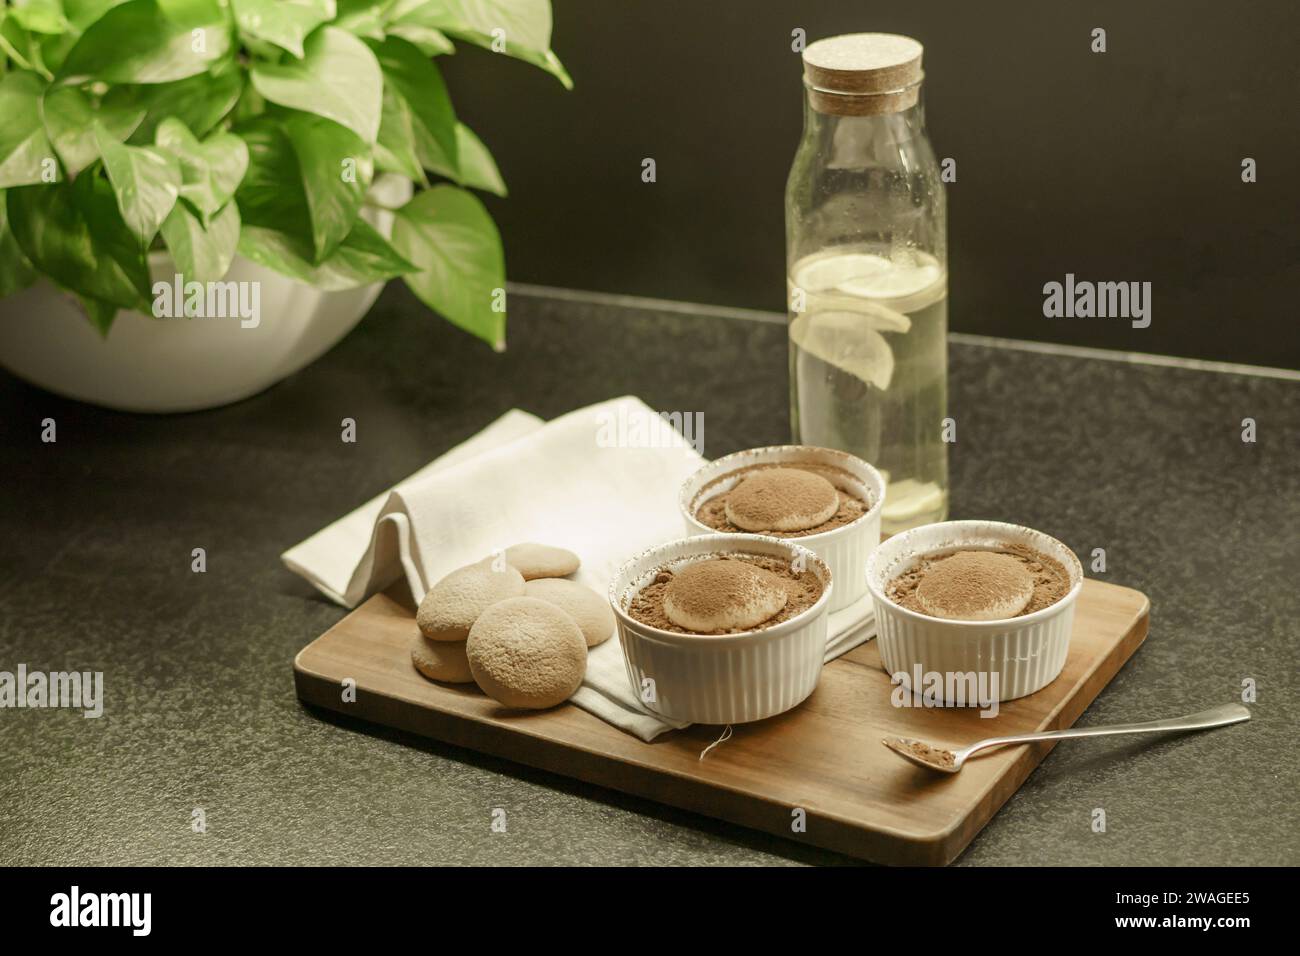 ciotole con tiramisù fatto in casa su una tavola di legno, cucchiaio con cacao in polvere, torte di spugna e un panno Foto Stock